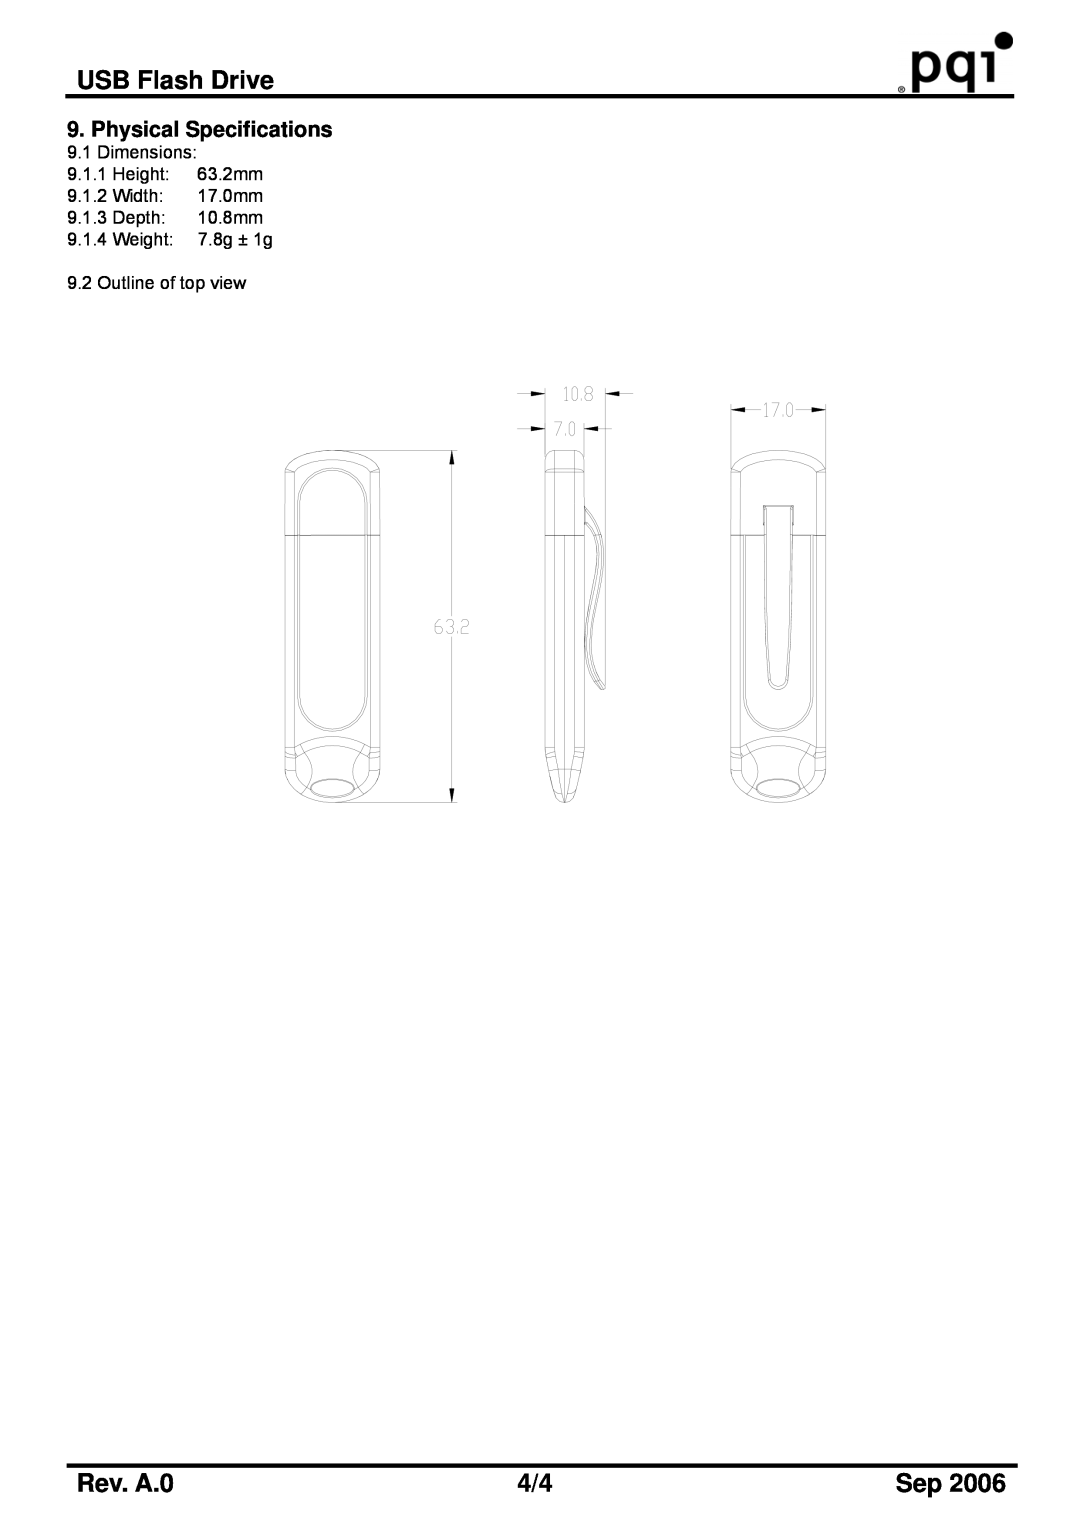 PQI U191 manual USB Flash Drive, Rev. A.0, Dimensions 9.1.1 Height 63.2mm 9.1.2 Width 17.0mm 